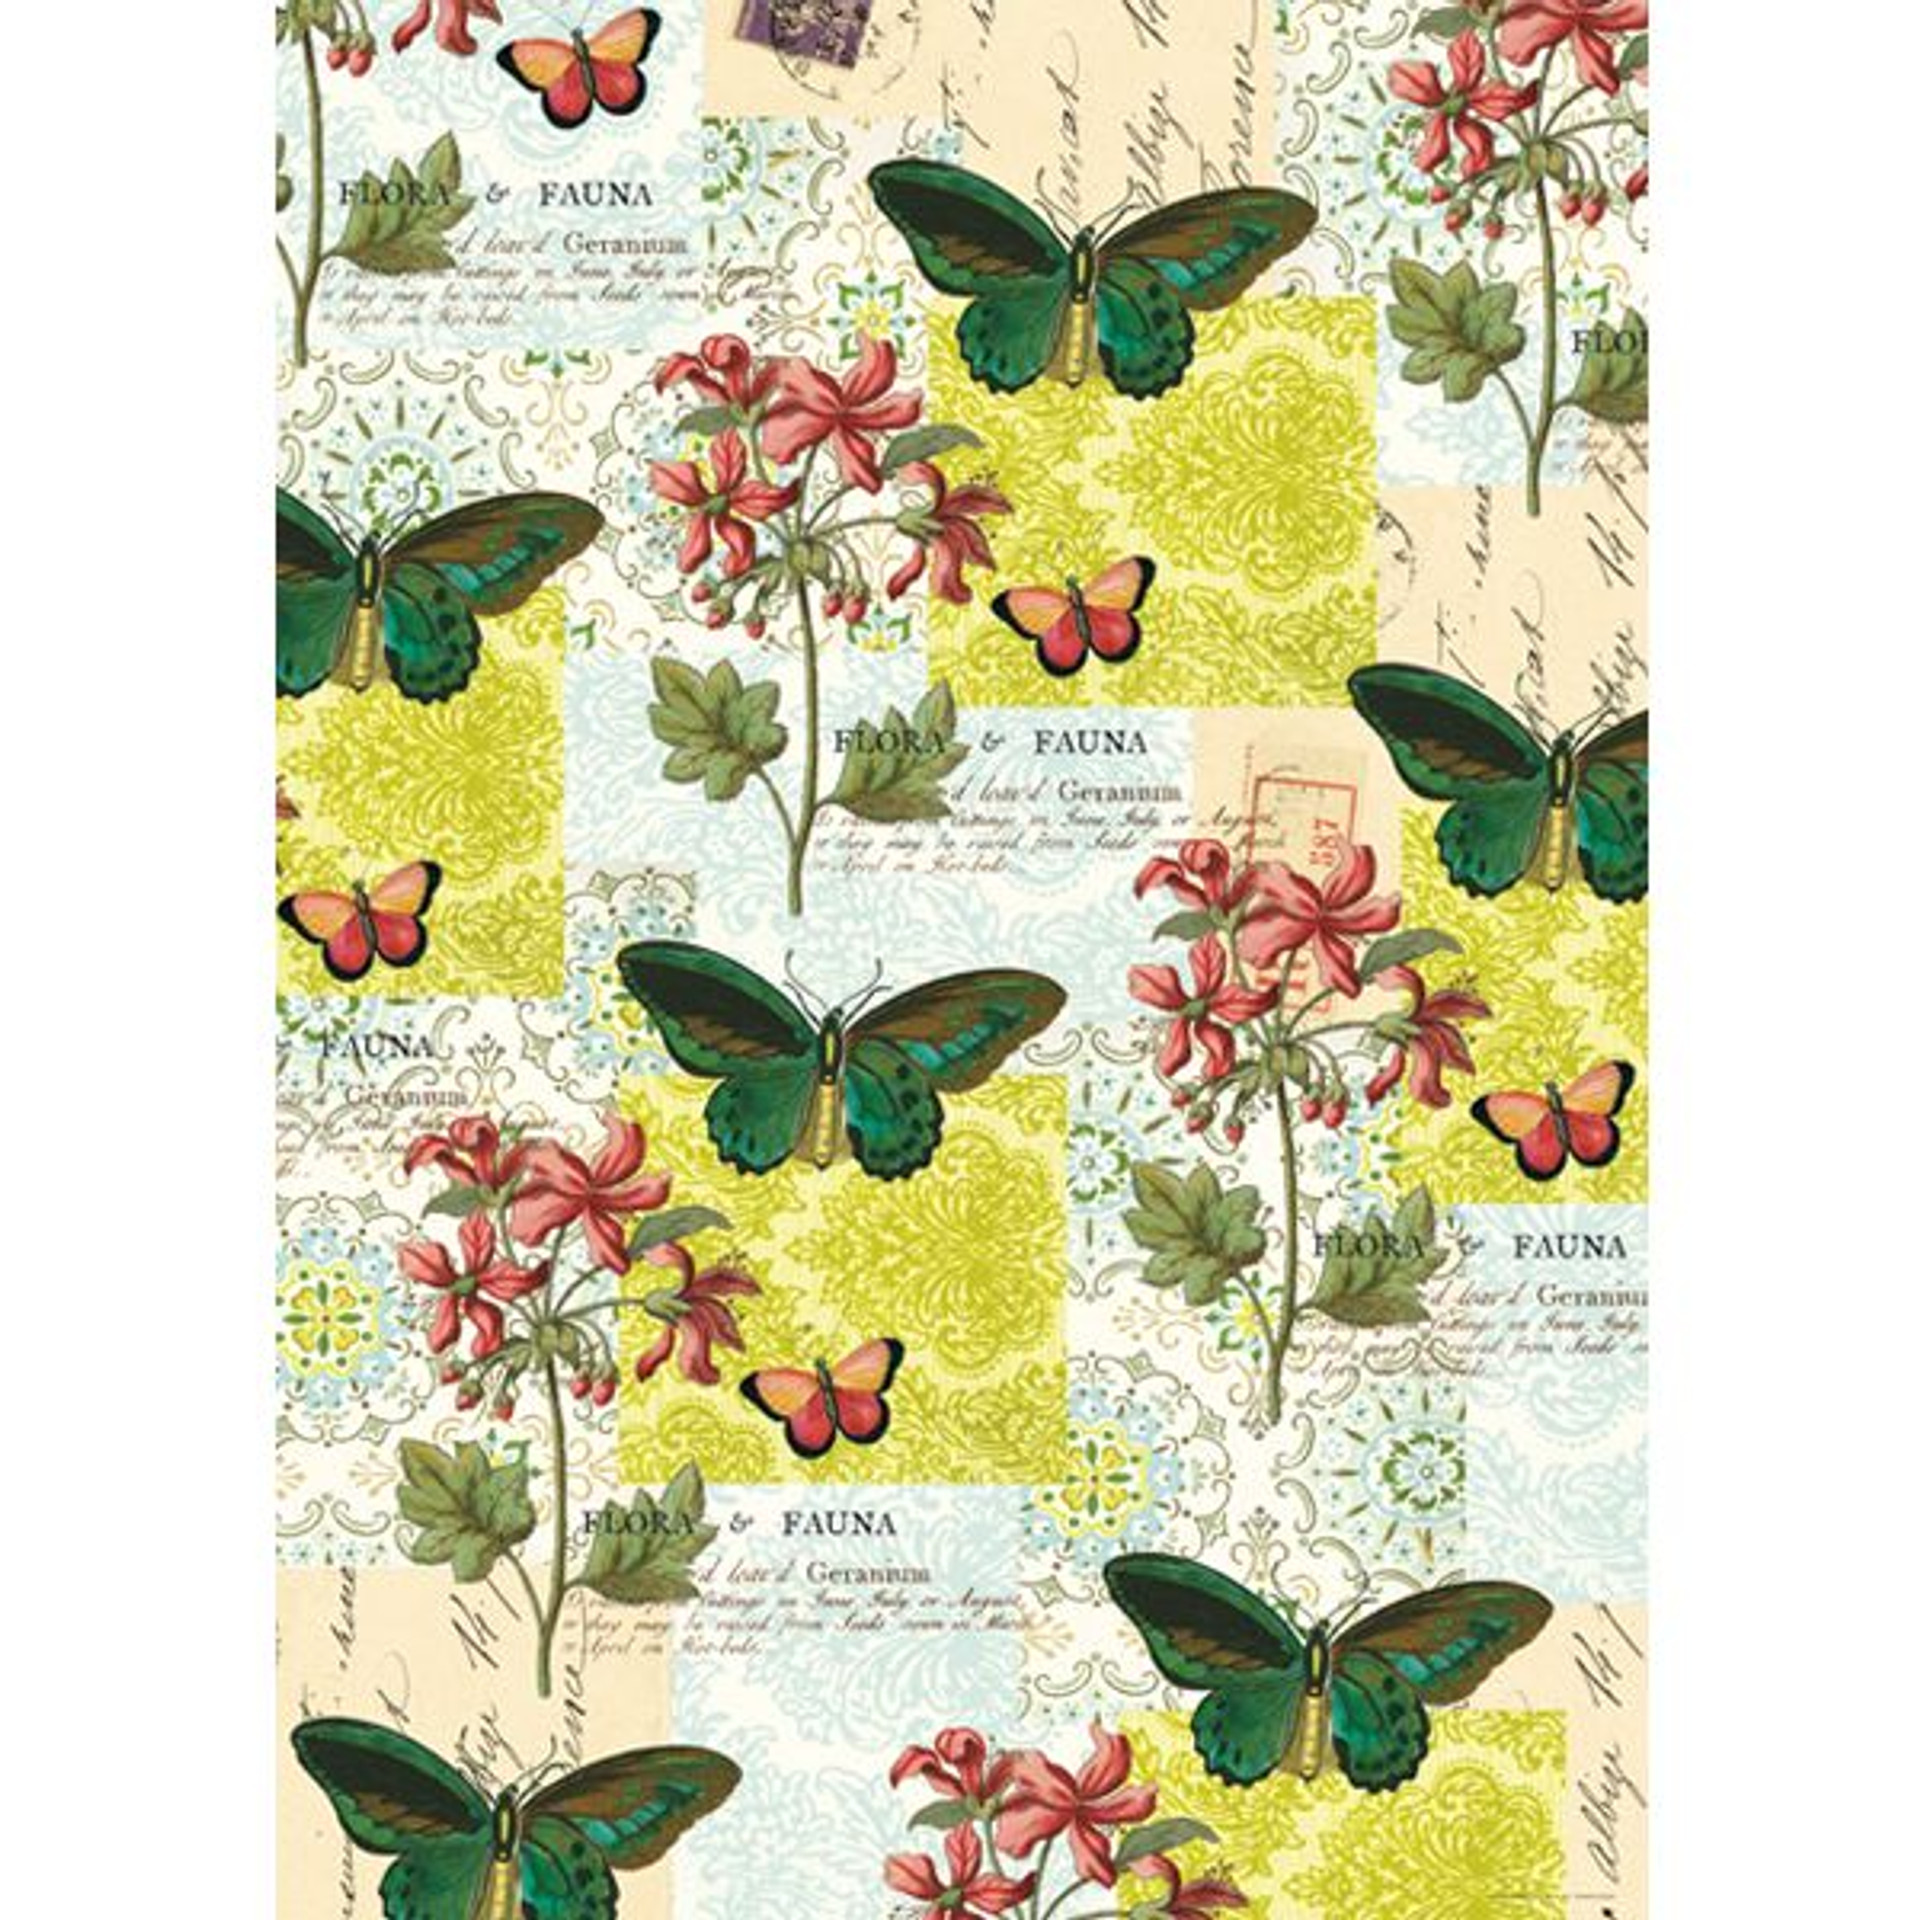 Cavallini & Co. Decorative Wrap Flora & Fauna Butterfly Stampington